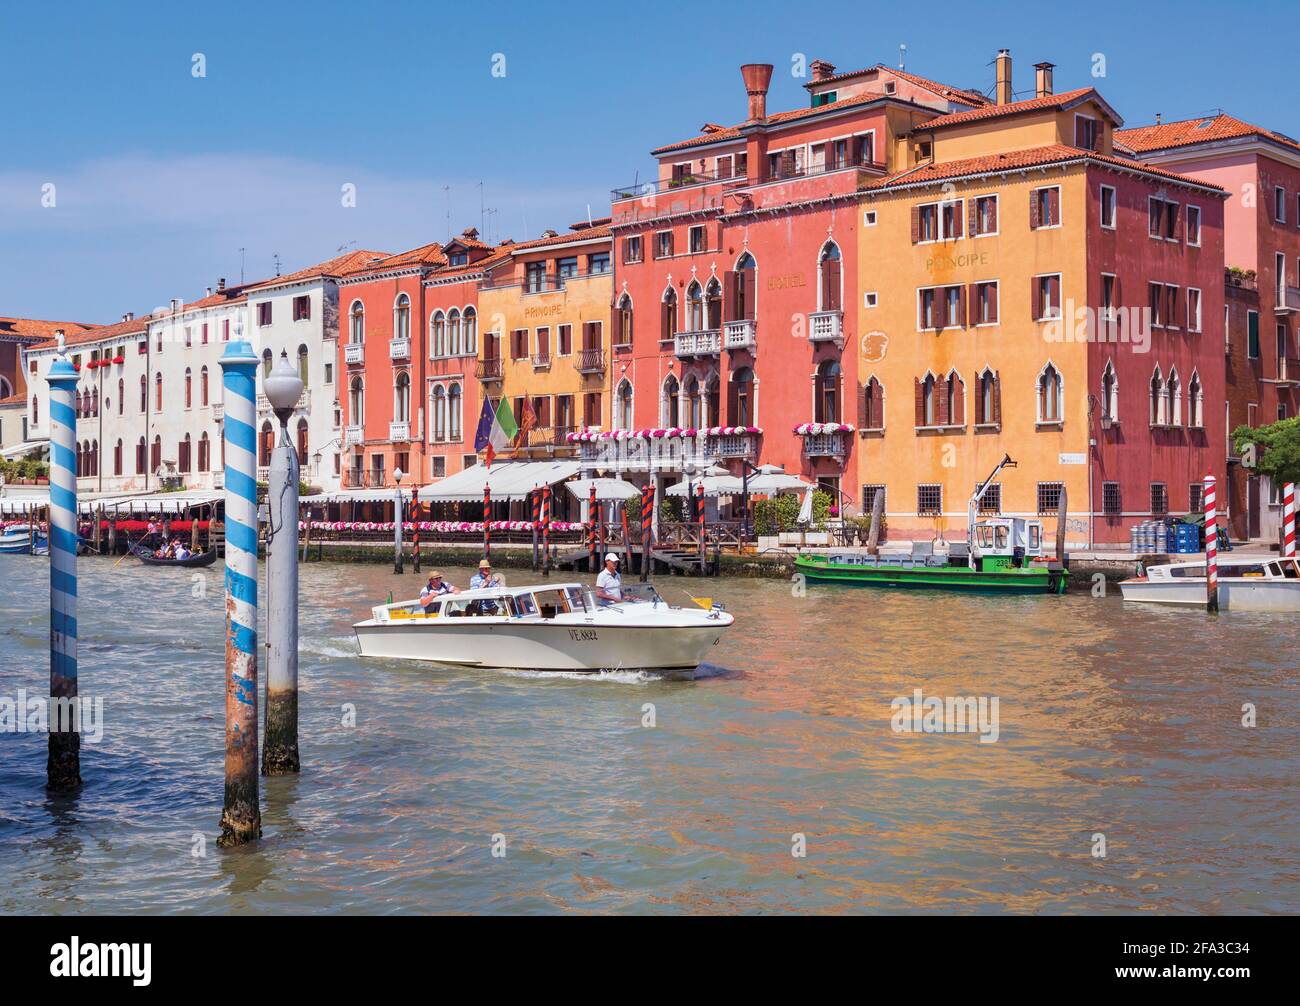 Venezia, Italia. Un taxi acqueo con passeggeri si fa strada lungo il Canal Grande. Venezia e la sua laguna sono patrimonio dell'umanità dell'UNESCO. Foto Stock